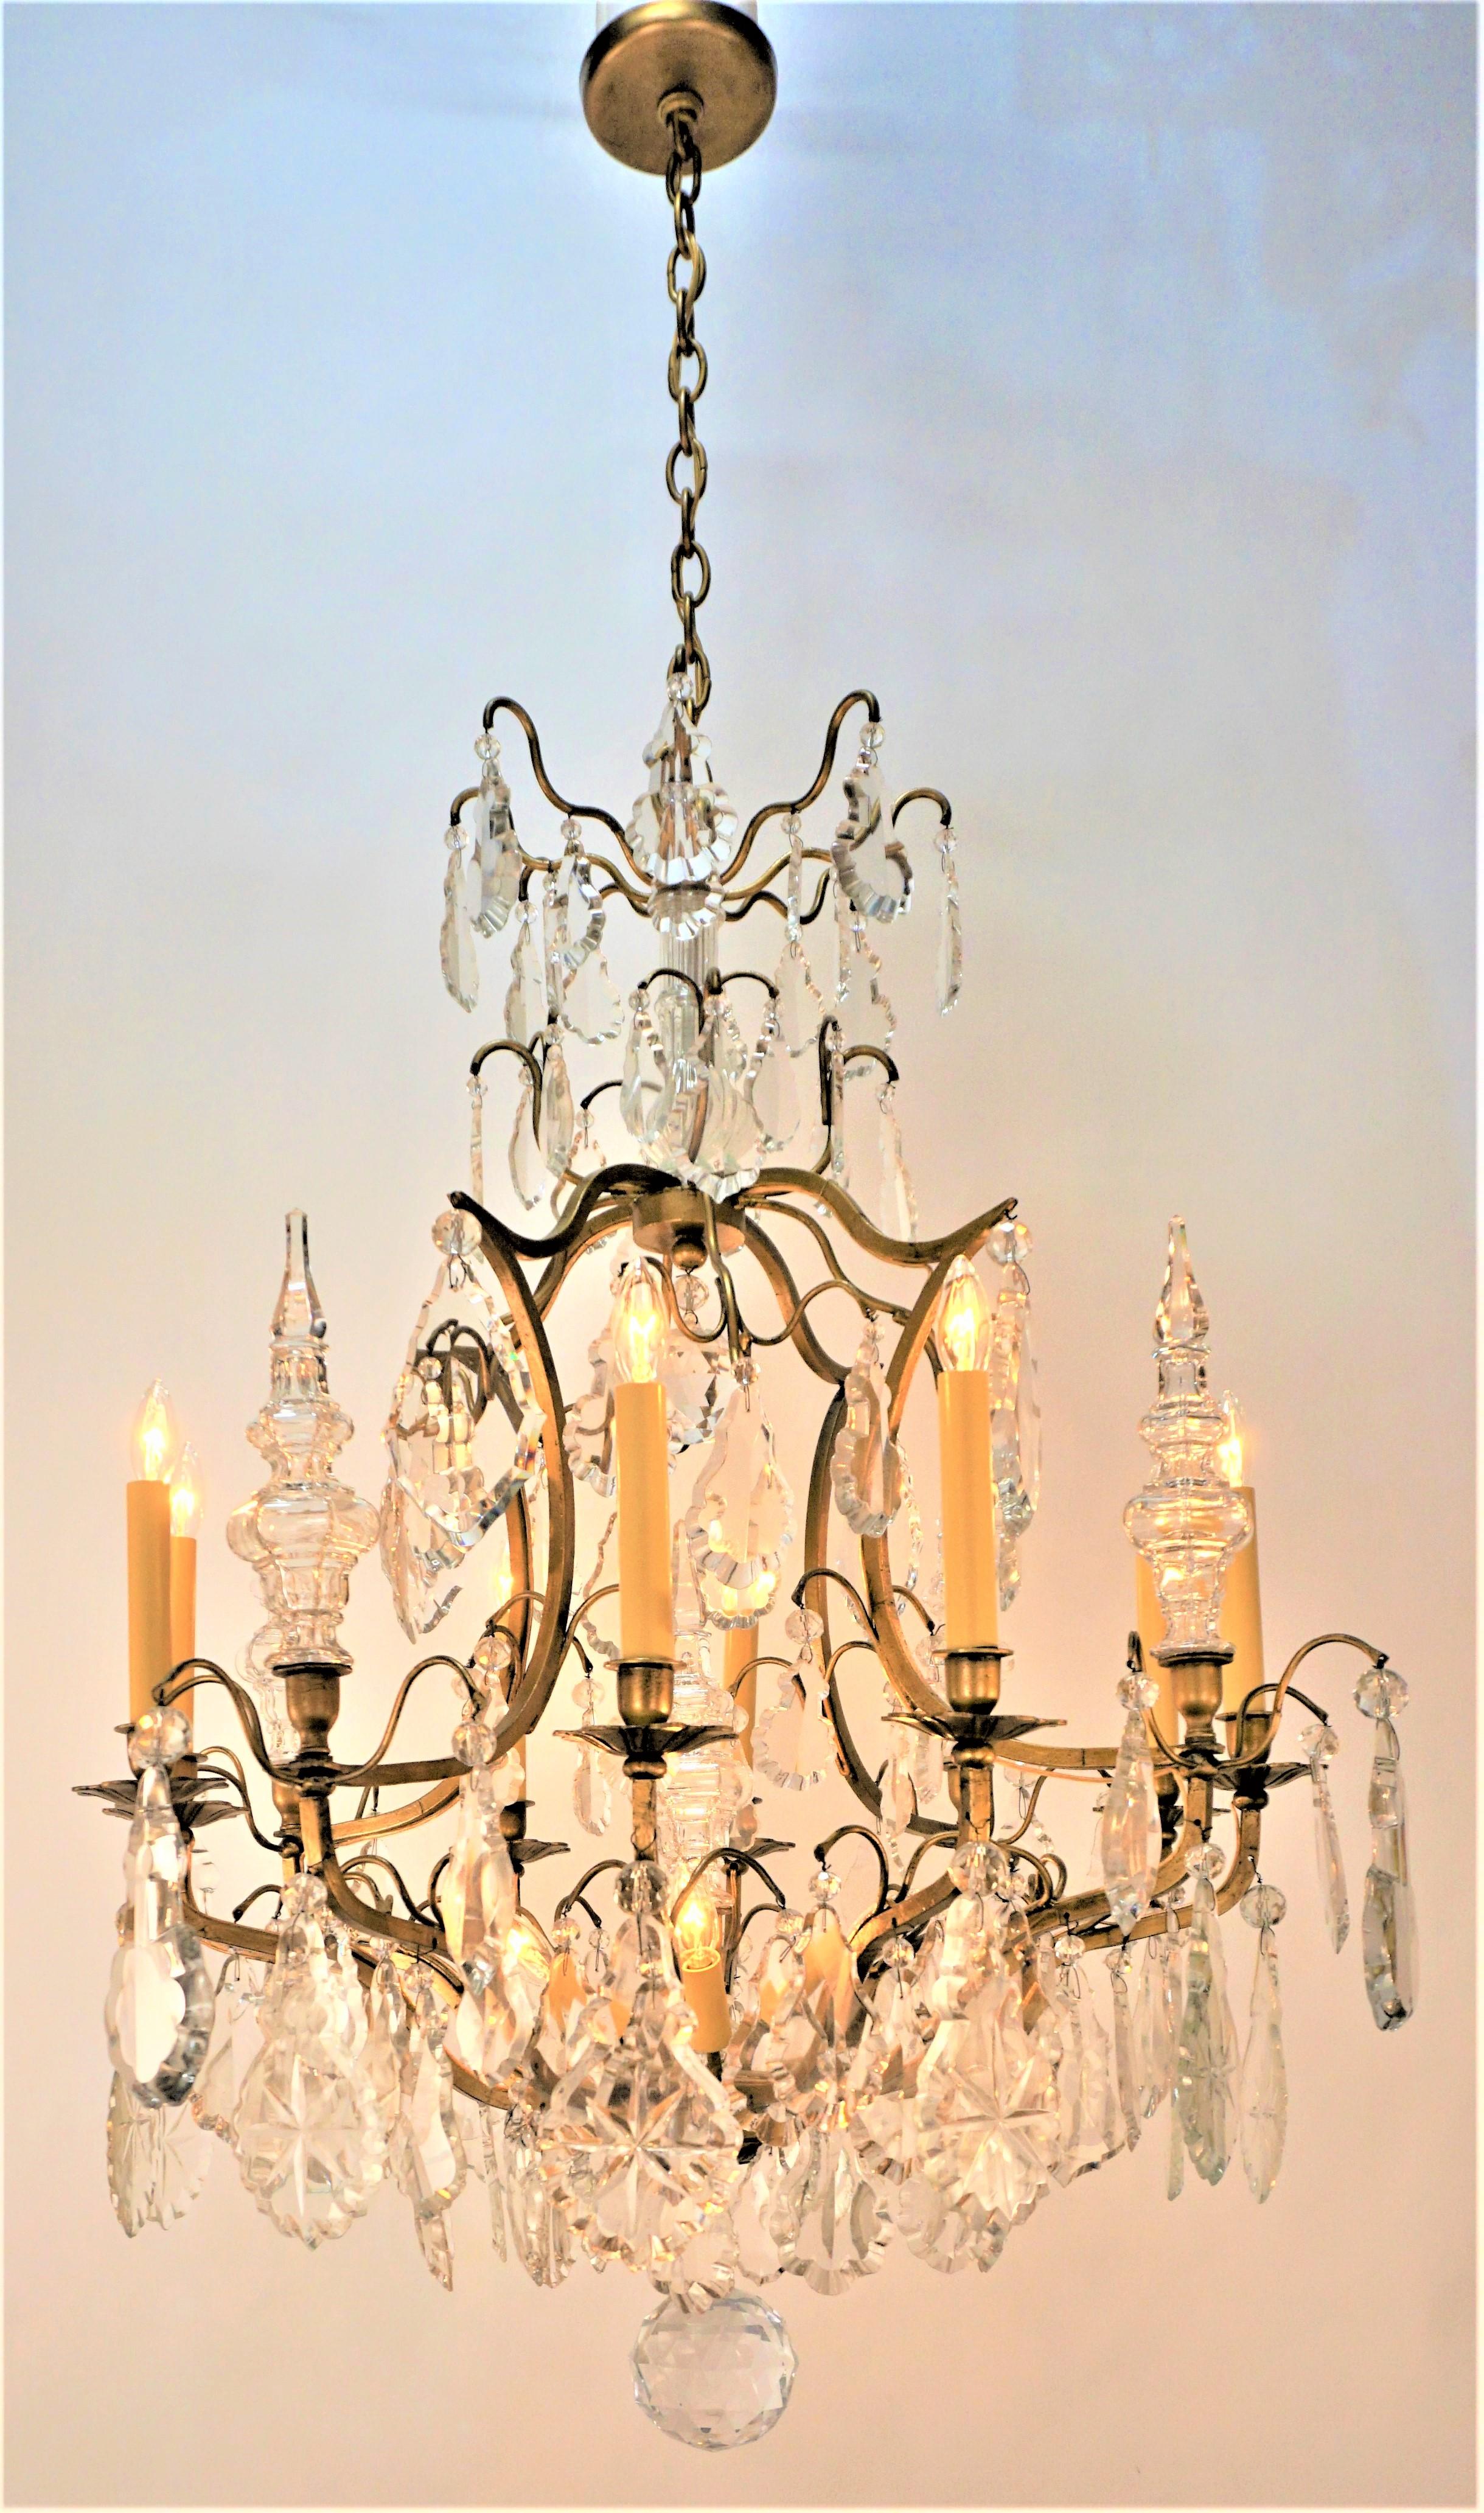 Polished crystal gilt iron twelve light 1930s chandelier.
Measurement: width 28